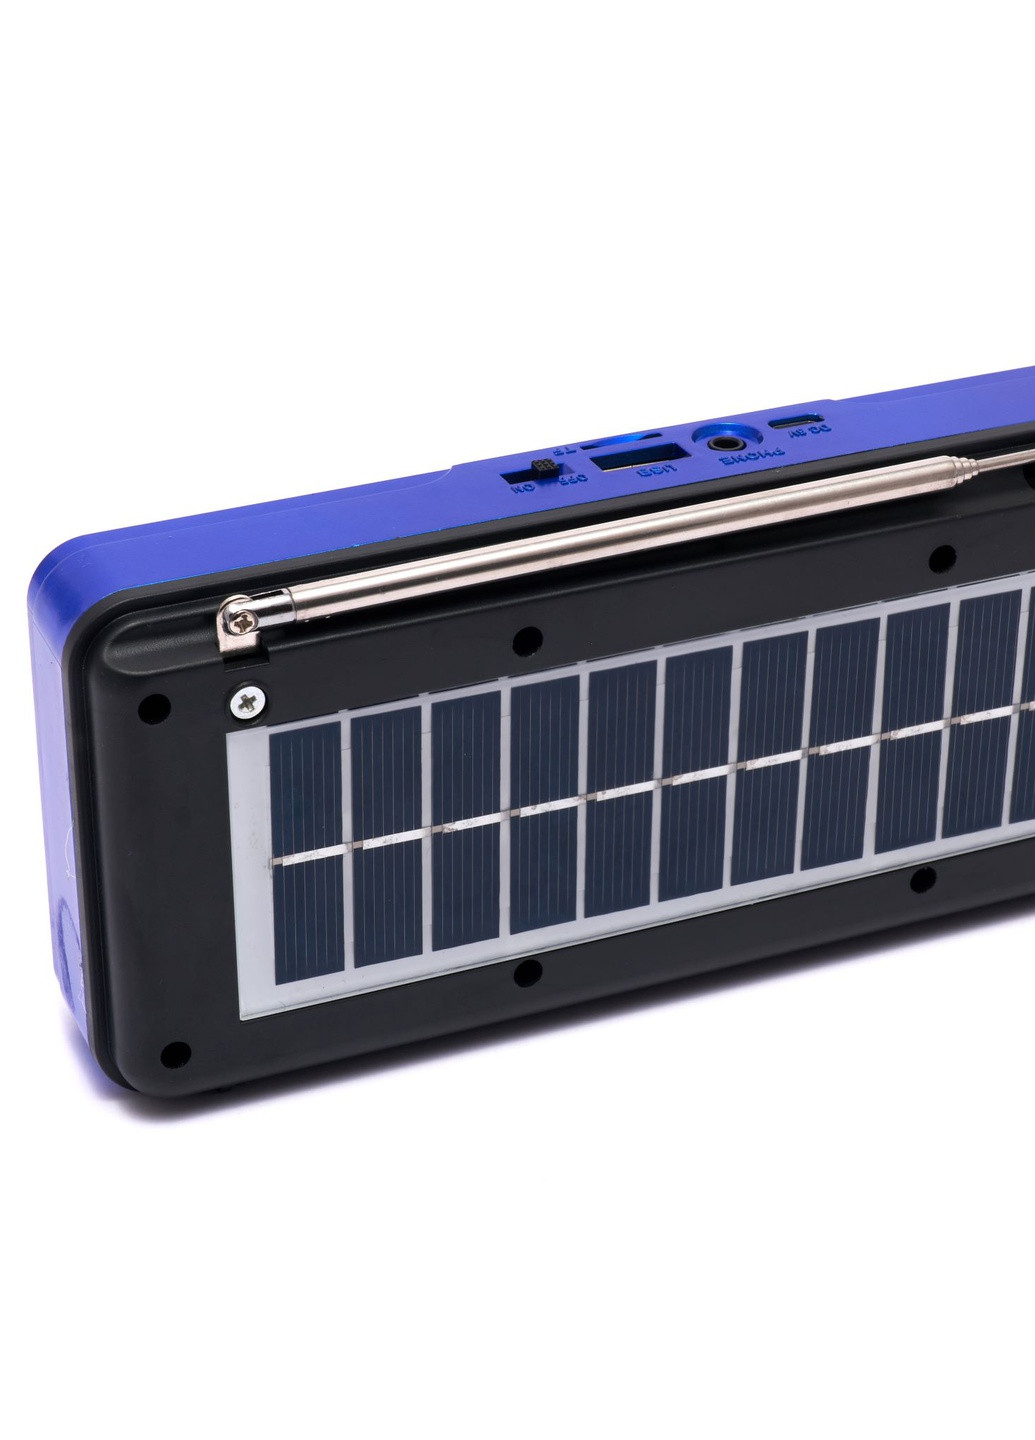 Портативный радиоприёмник аккумуляторный FM радио YUEGAN YG-1881US c SD-карта, MP3 плеер солнечная панель синий Led (257196484)